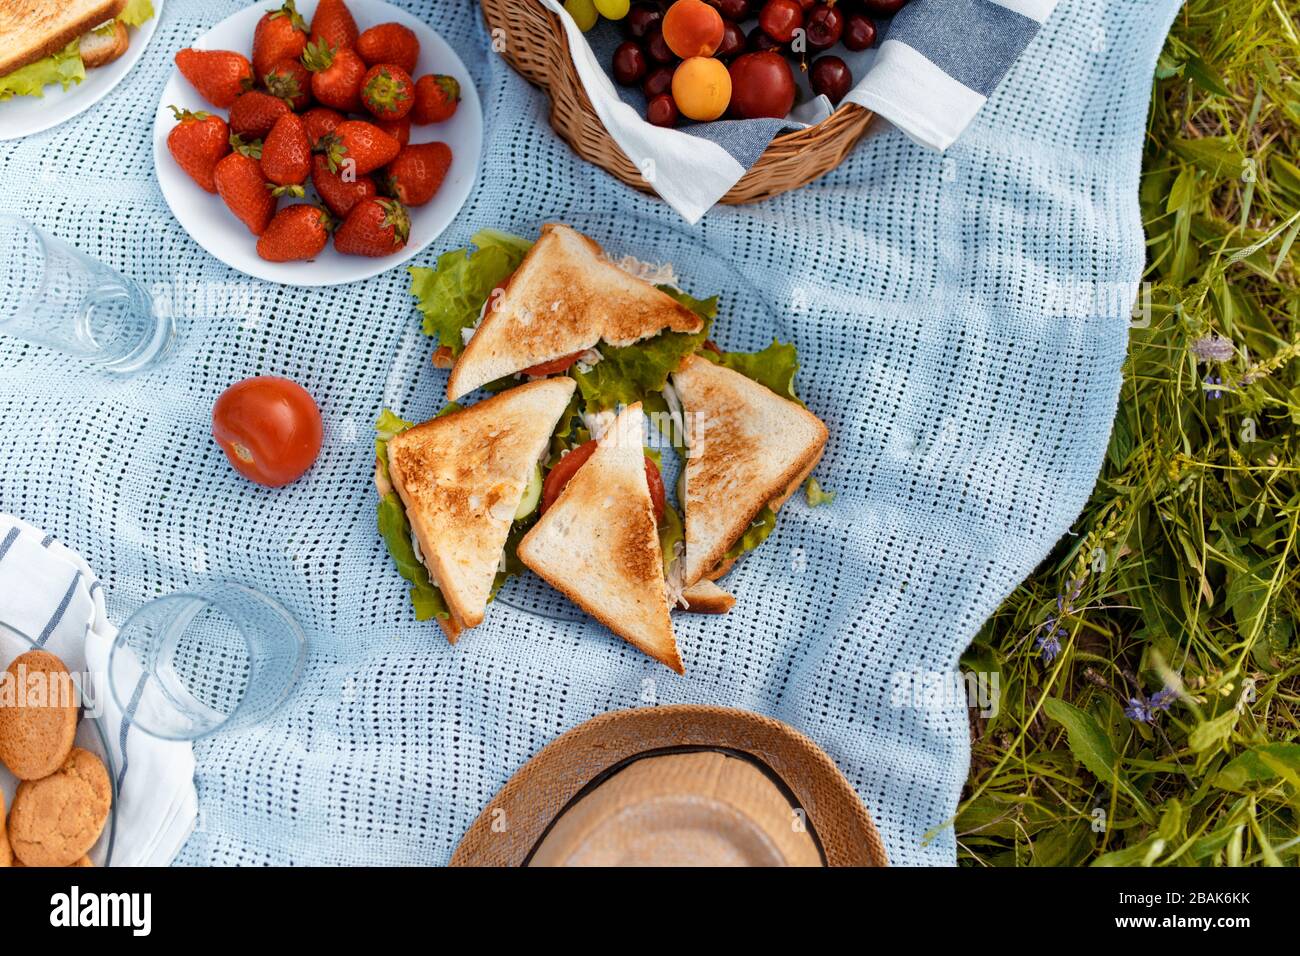 Sommerpicknick auf dem Gras mit einem offenen Picknickkorb, Obst, mit getoasteten Sandwiches und Beeren. Picknicktablectloth. Blick von oben. Stockfoto